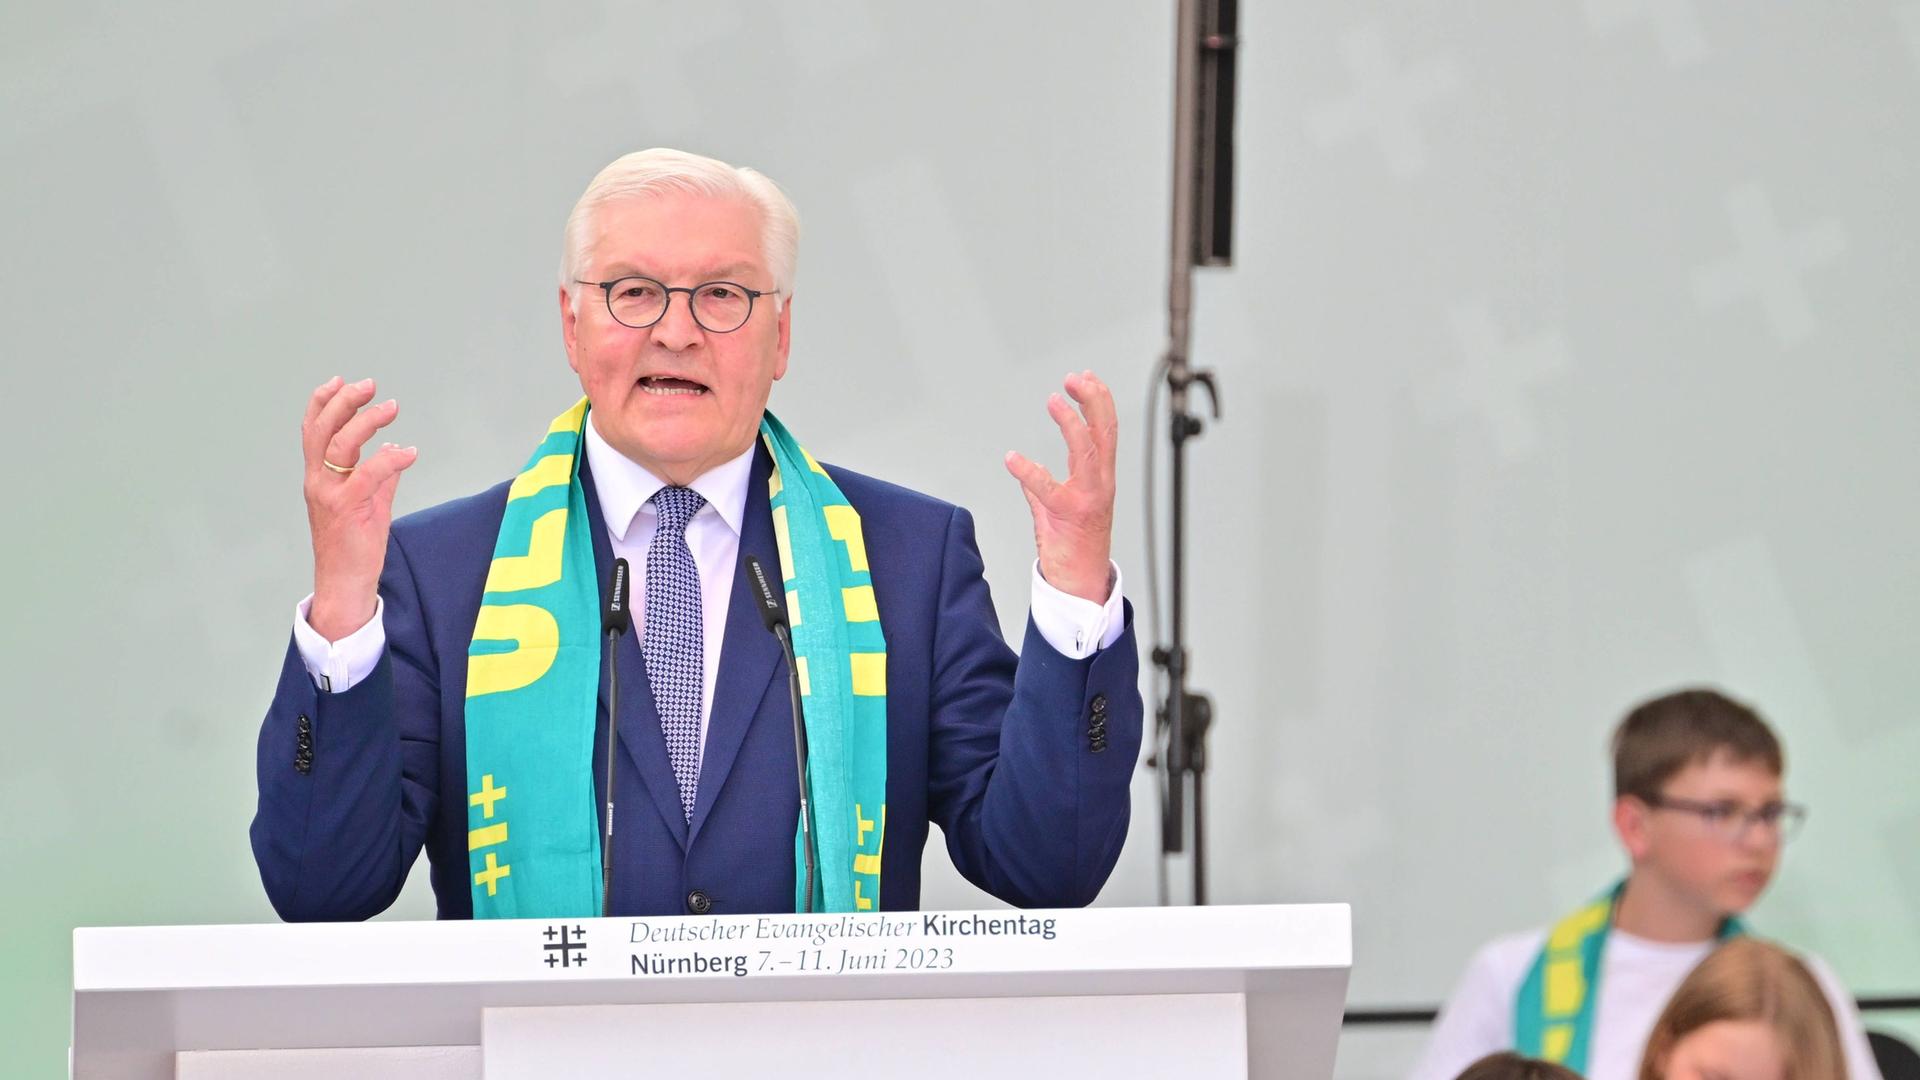 Bundespräsident Steinmeier steht beim Deutschen Evangelischen Kirchentag in Nürnberg hinter einem Rednerpult und hebt beide Hände. Er trägt einen Schal mit dem Motto des Kirchentages, "Jetzt ist Zeit".